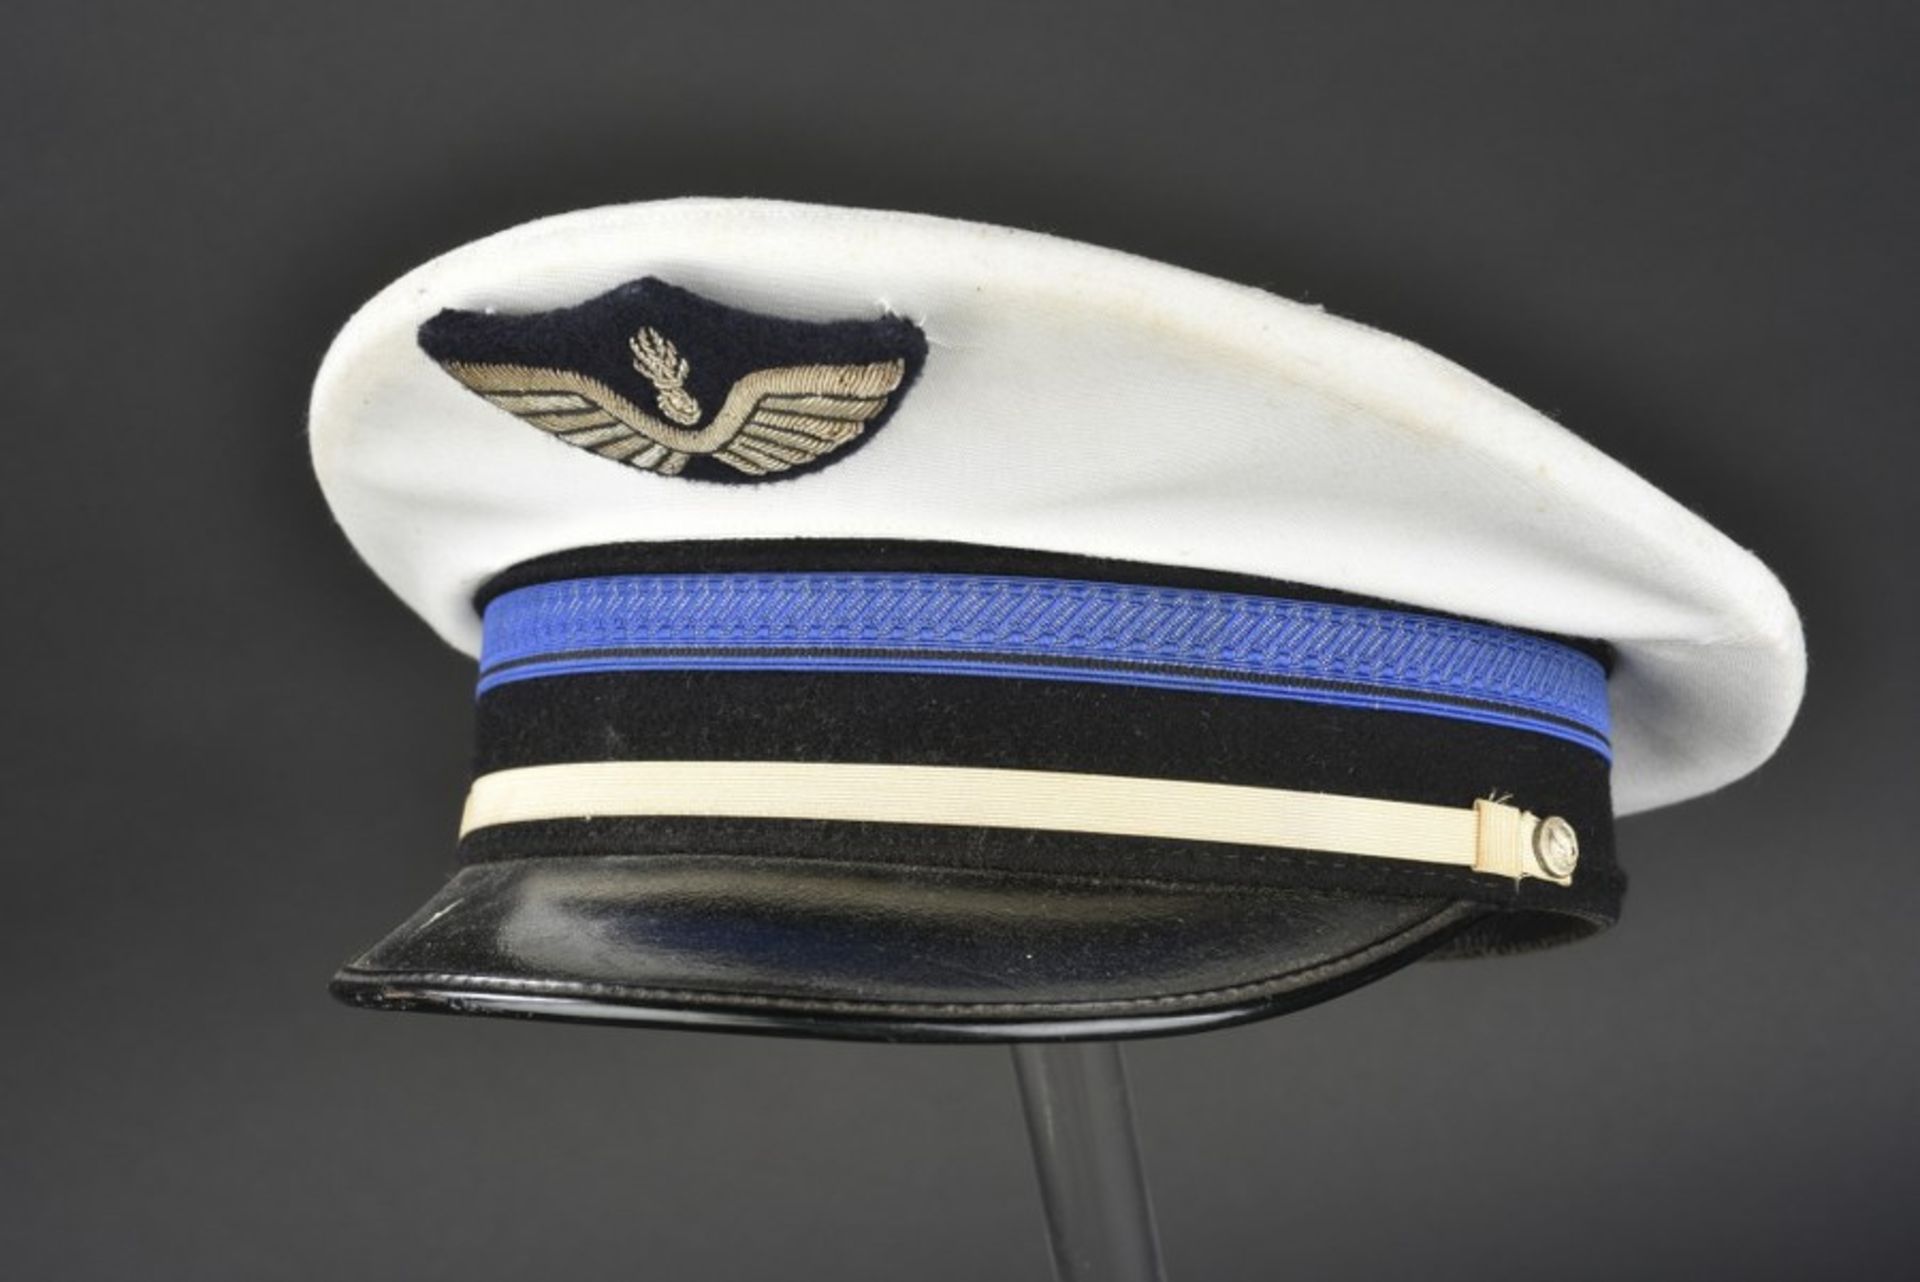 Ensemble de casquette de la Gendarmerie (après-guerre et contemporain) comprenant 2 gendarmerie de - Image 2 of 4